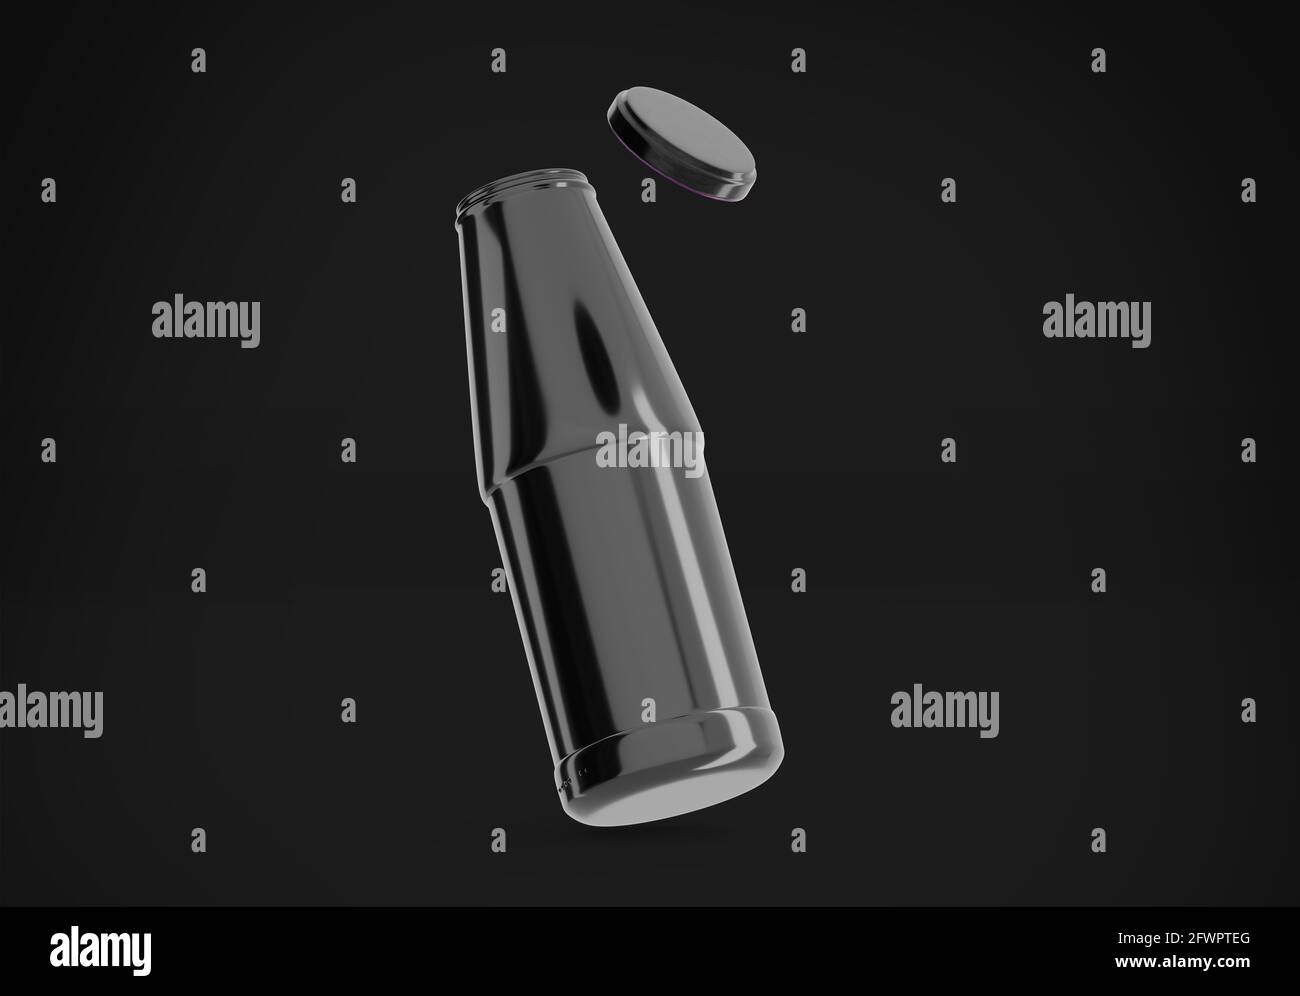 Mockup aus schwarzer Saftflasche ohne Etikett, 3d-Rendering auf dunklem Hintergrund, Frischsaftpaket-Design Stockfoto